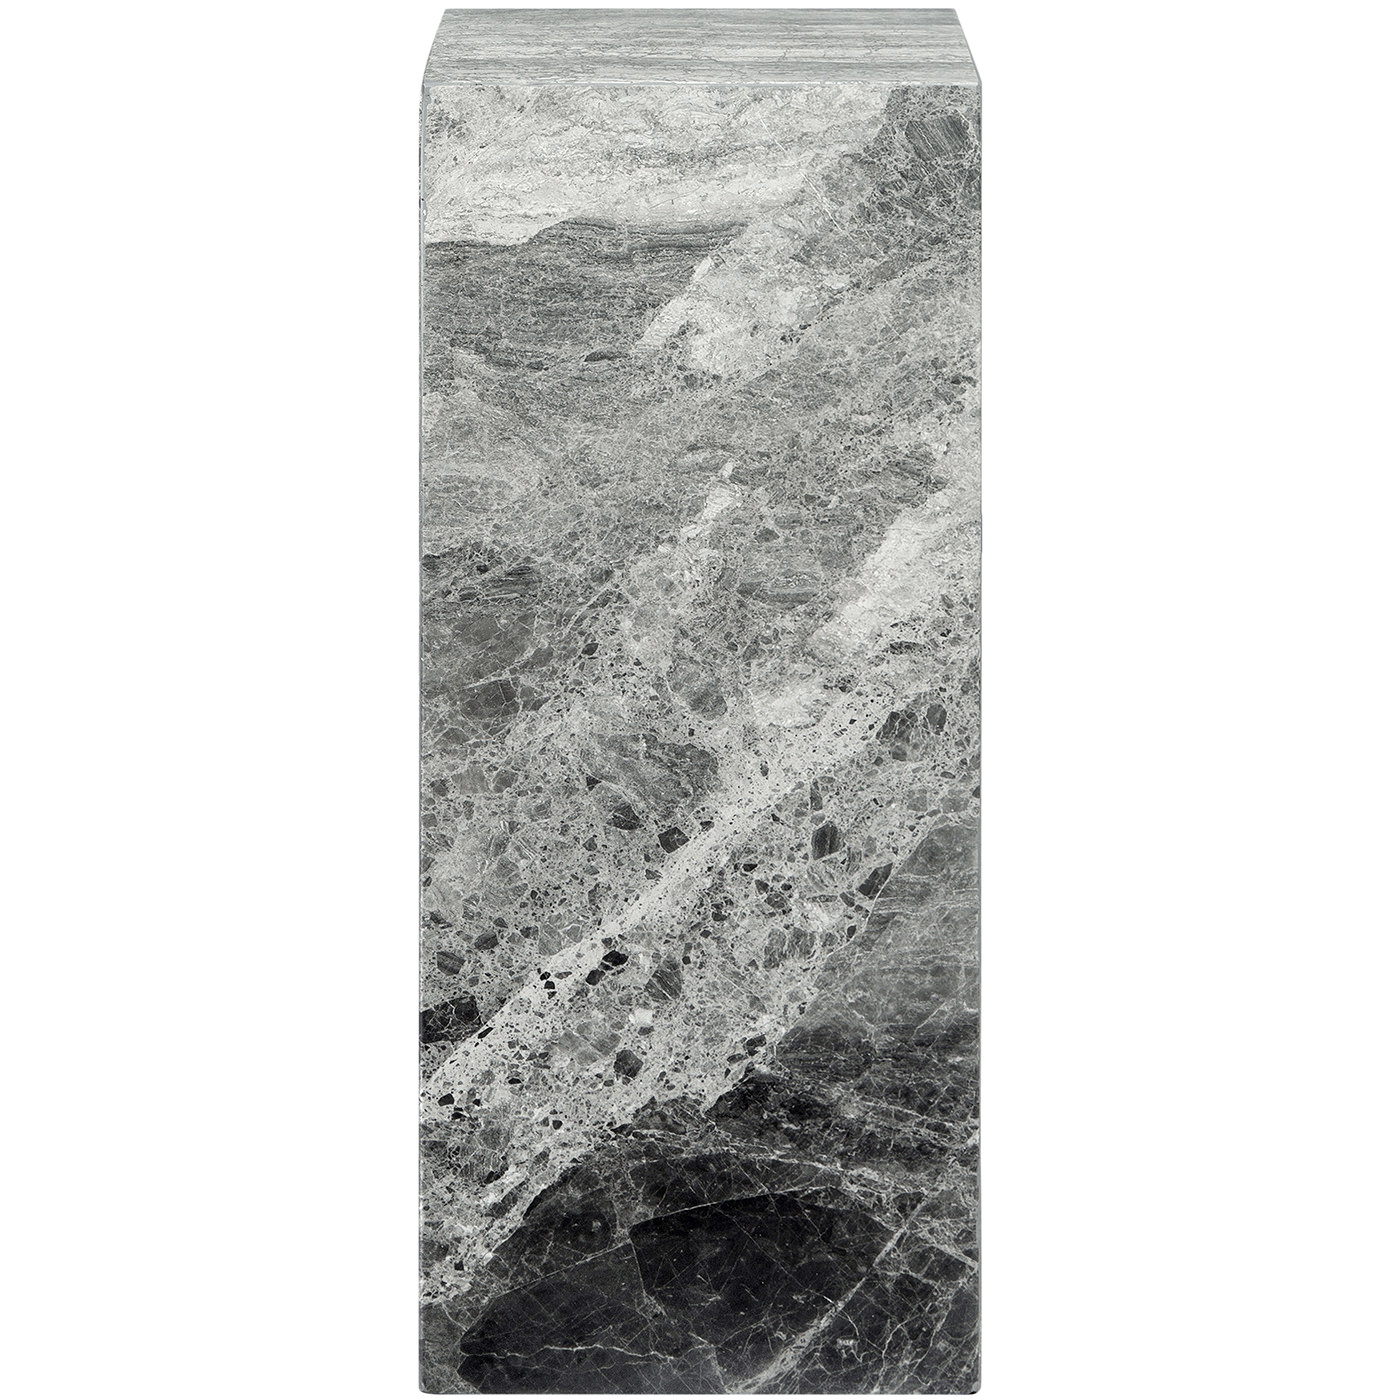 TI 1739 396 12 – Cubic Pedestal Marble River Grey 35x35xH90cm (2)